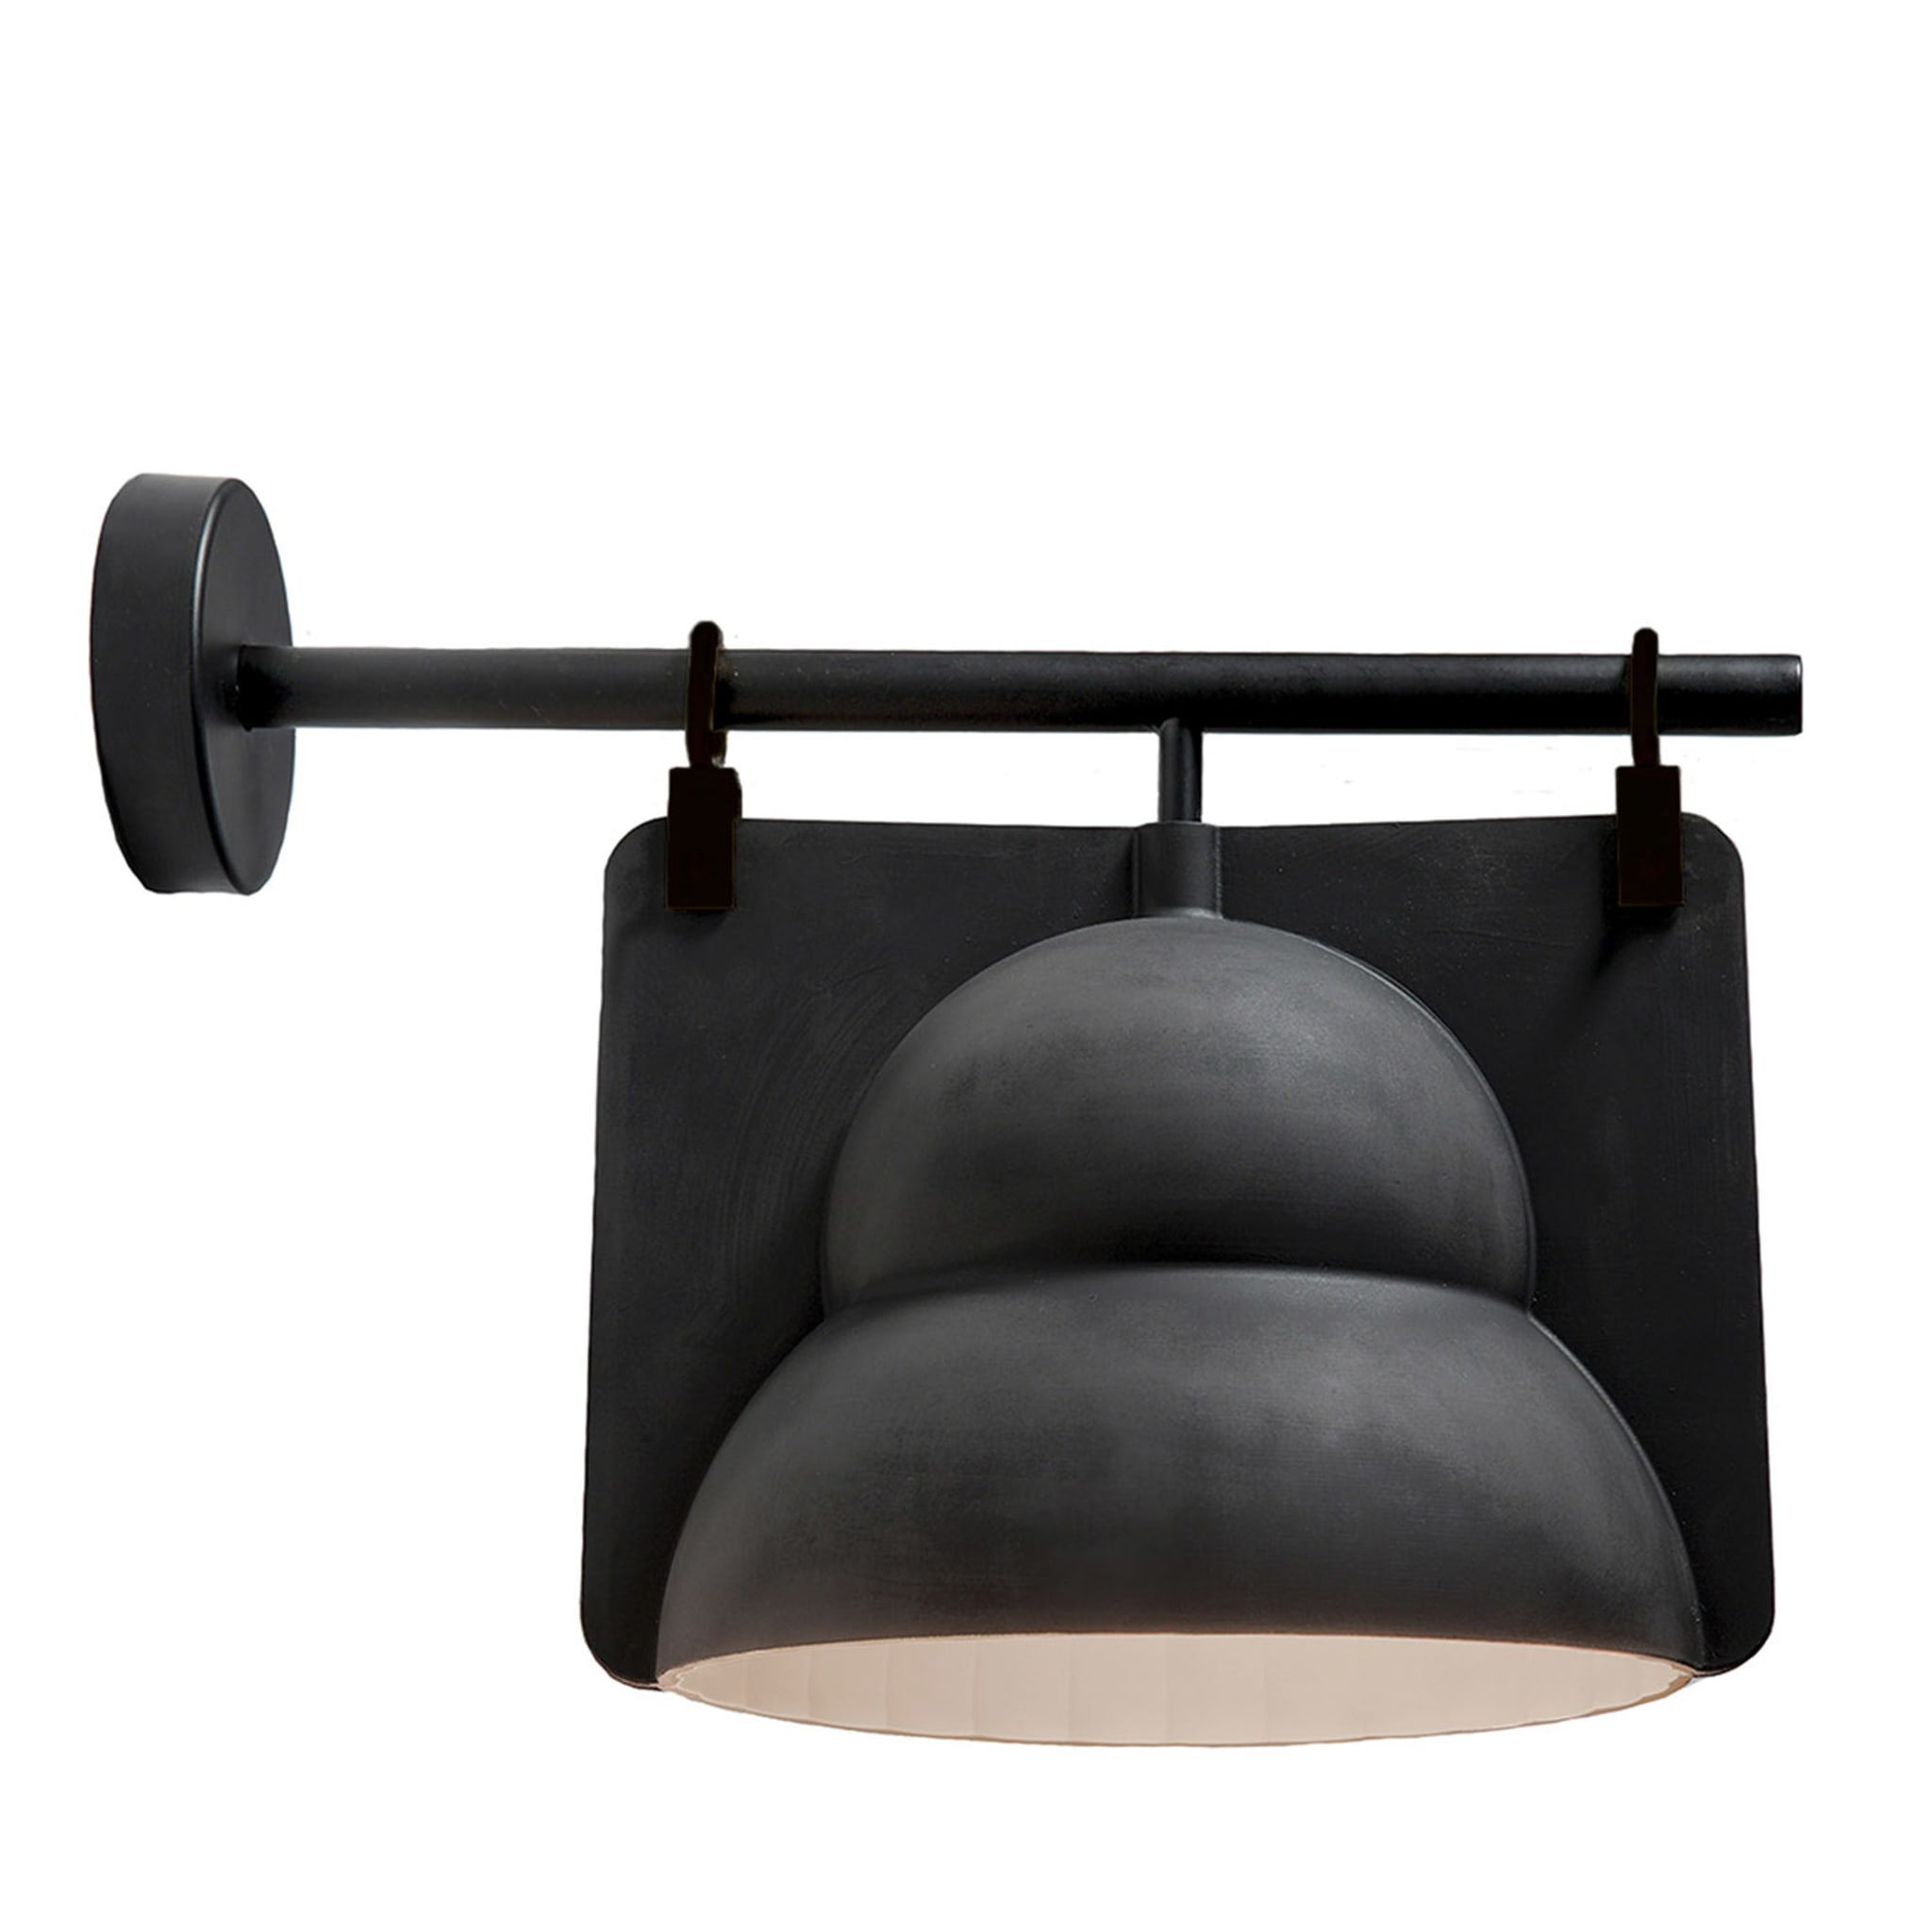 Black Ceramic Street Lamp Arm Wall Lamp - Main view